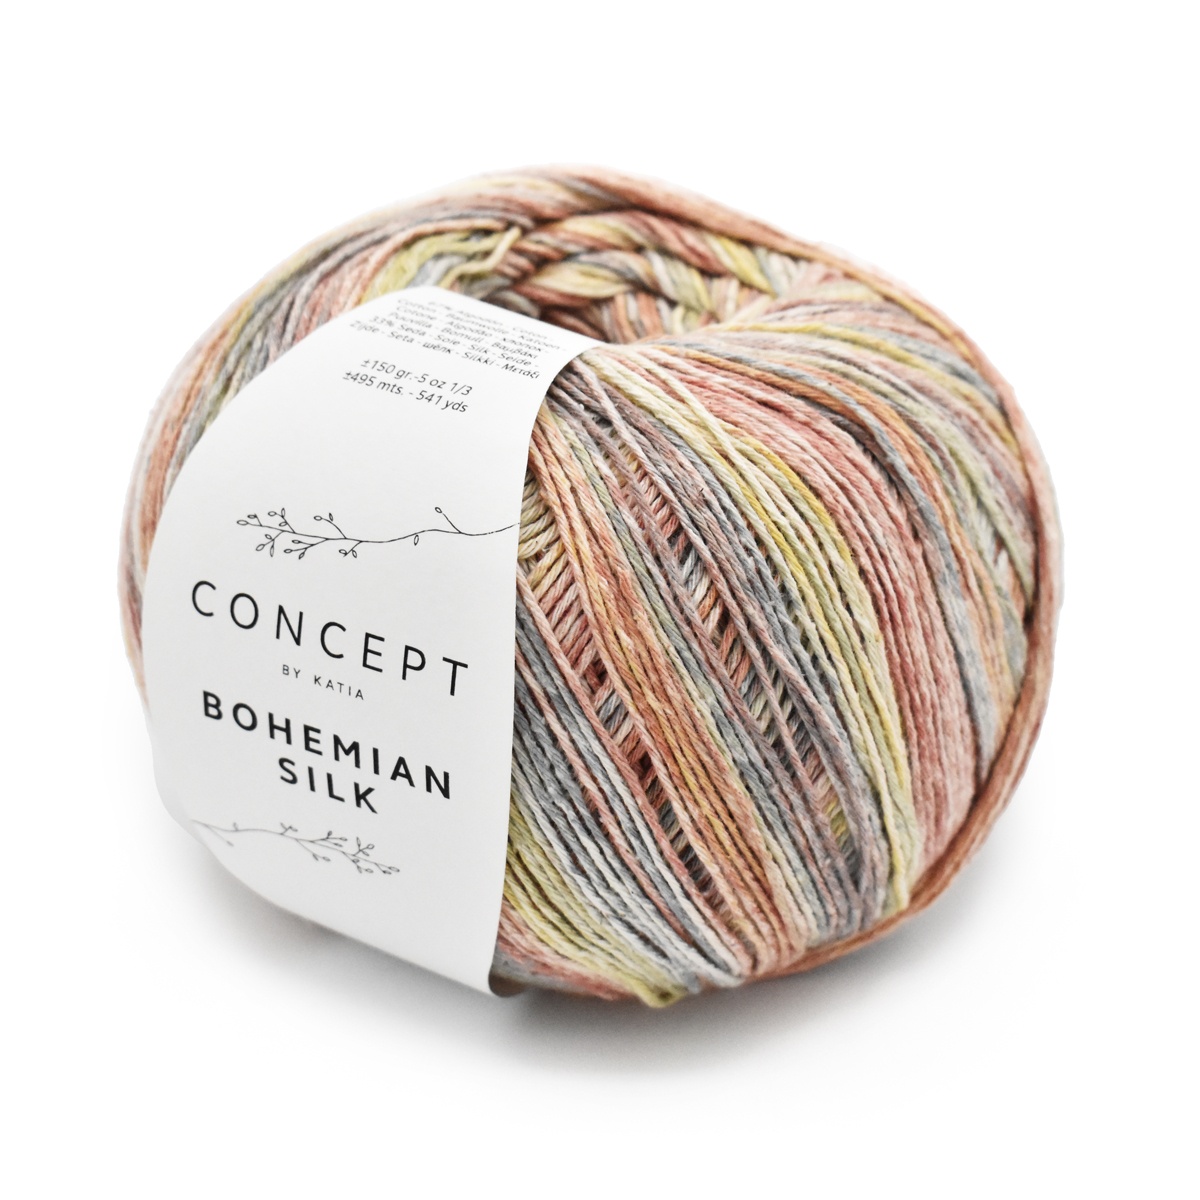 Photo of 'Concept Bohemian Silk' yarn